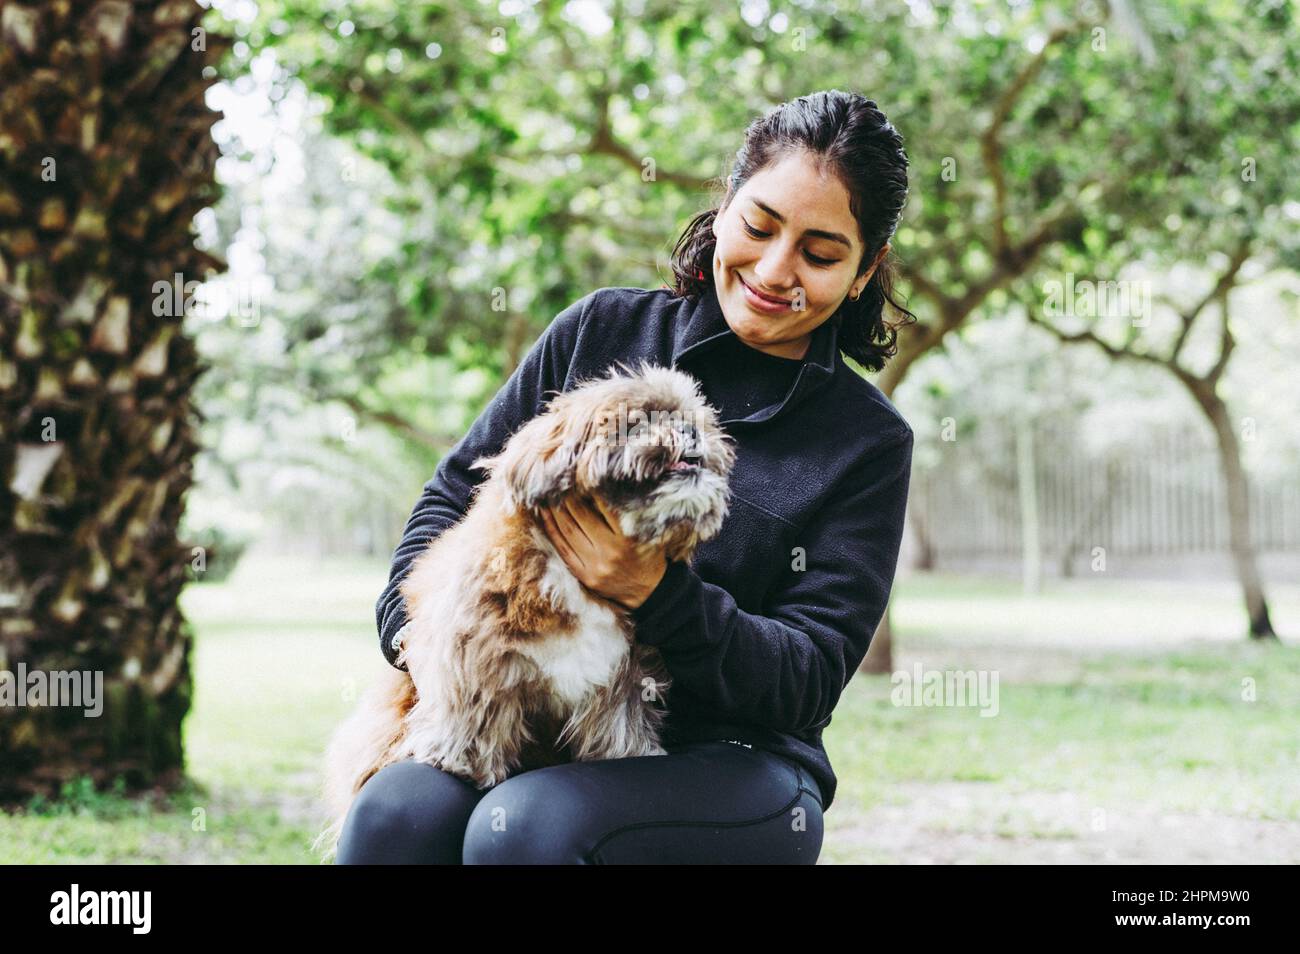 La giovane donna carina sta abbracciando il suo piccolo cucciolo. Amore tra proprietario e cane. Foto all'aperto nel parco, fuoco selettivo. Concetto di stile di vita Foto Stock